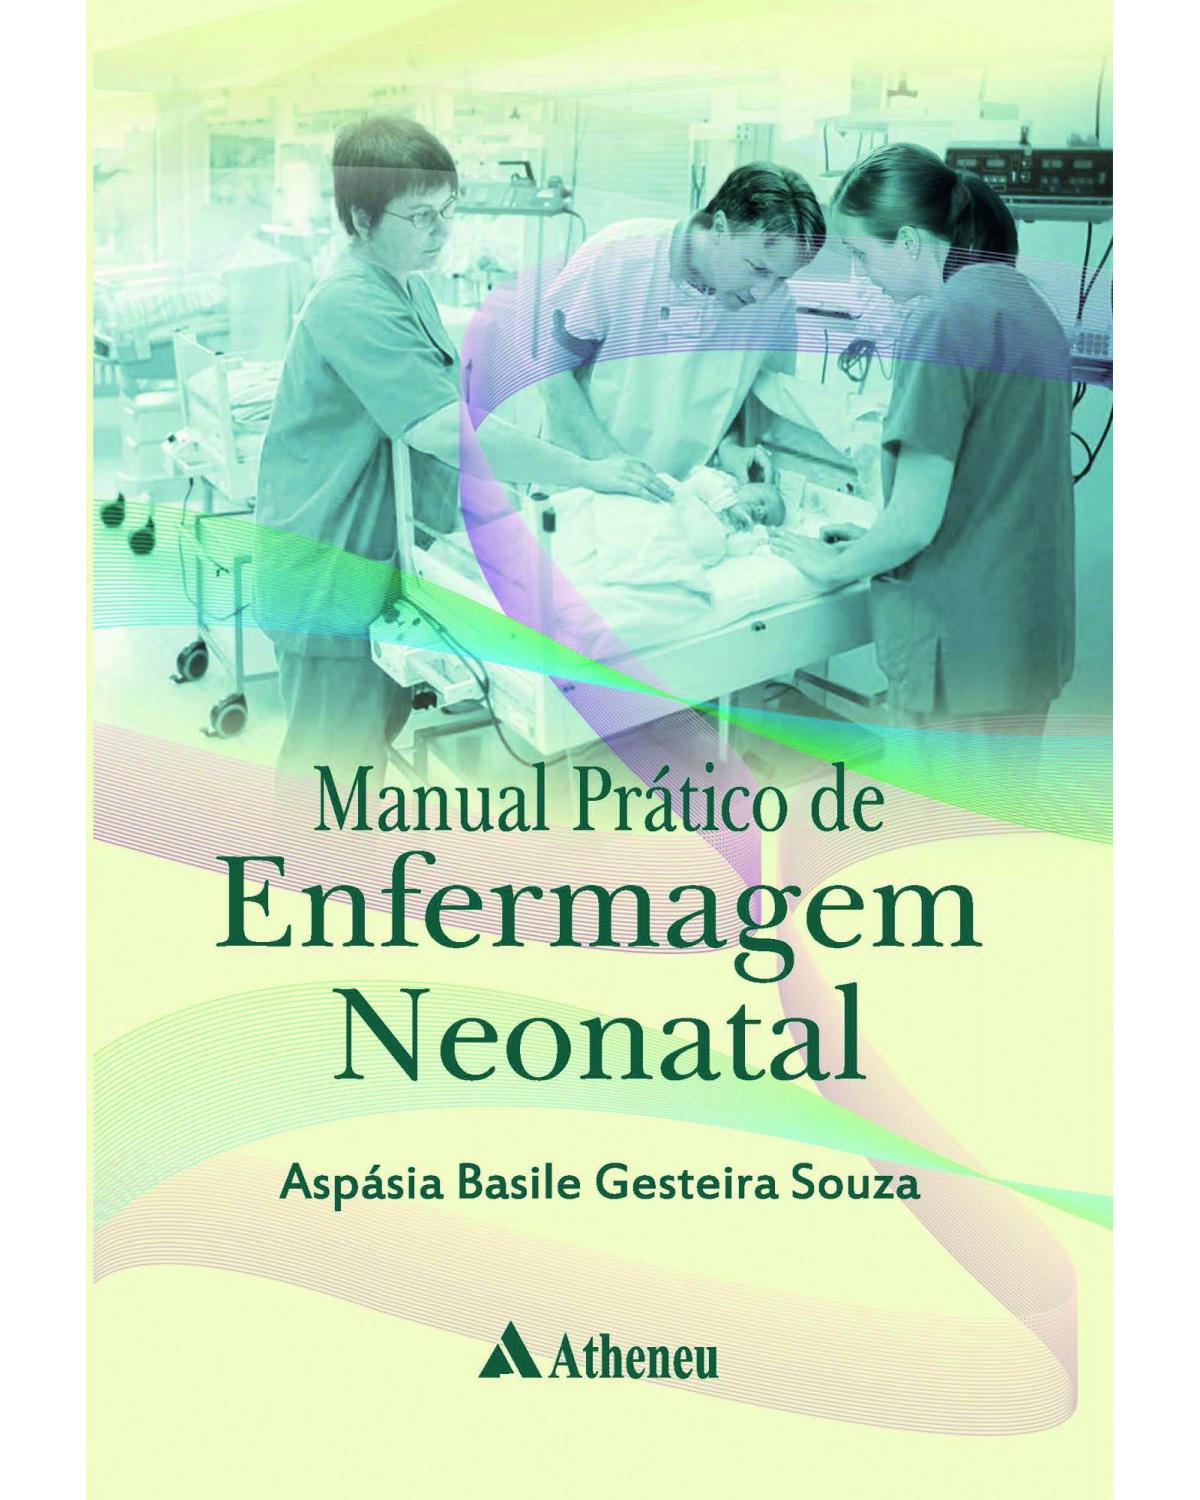 Manual prático de enfermagem neonatal - Escola de Enfermagem da Universidade de São Paulo - EEUSP - 1ª Edição | 2017